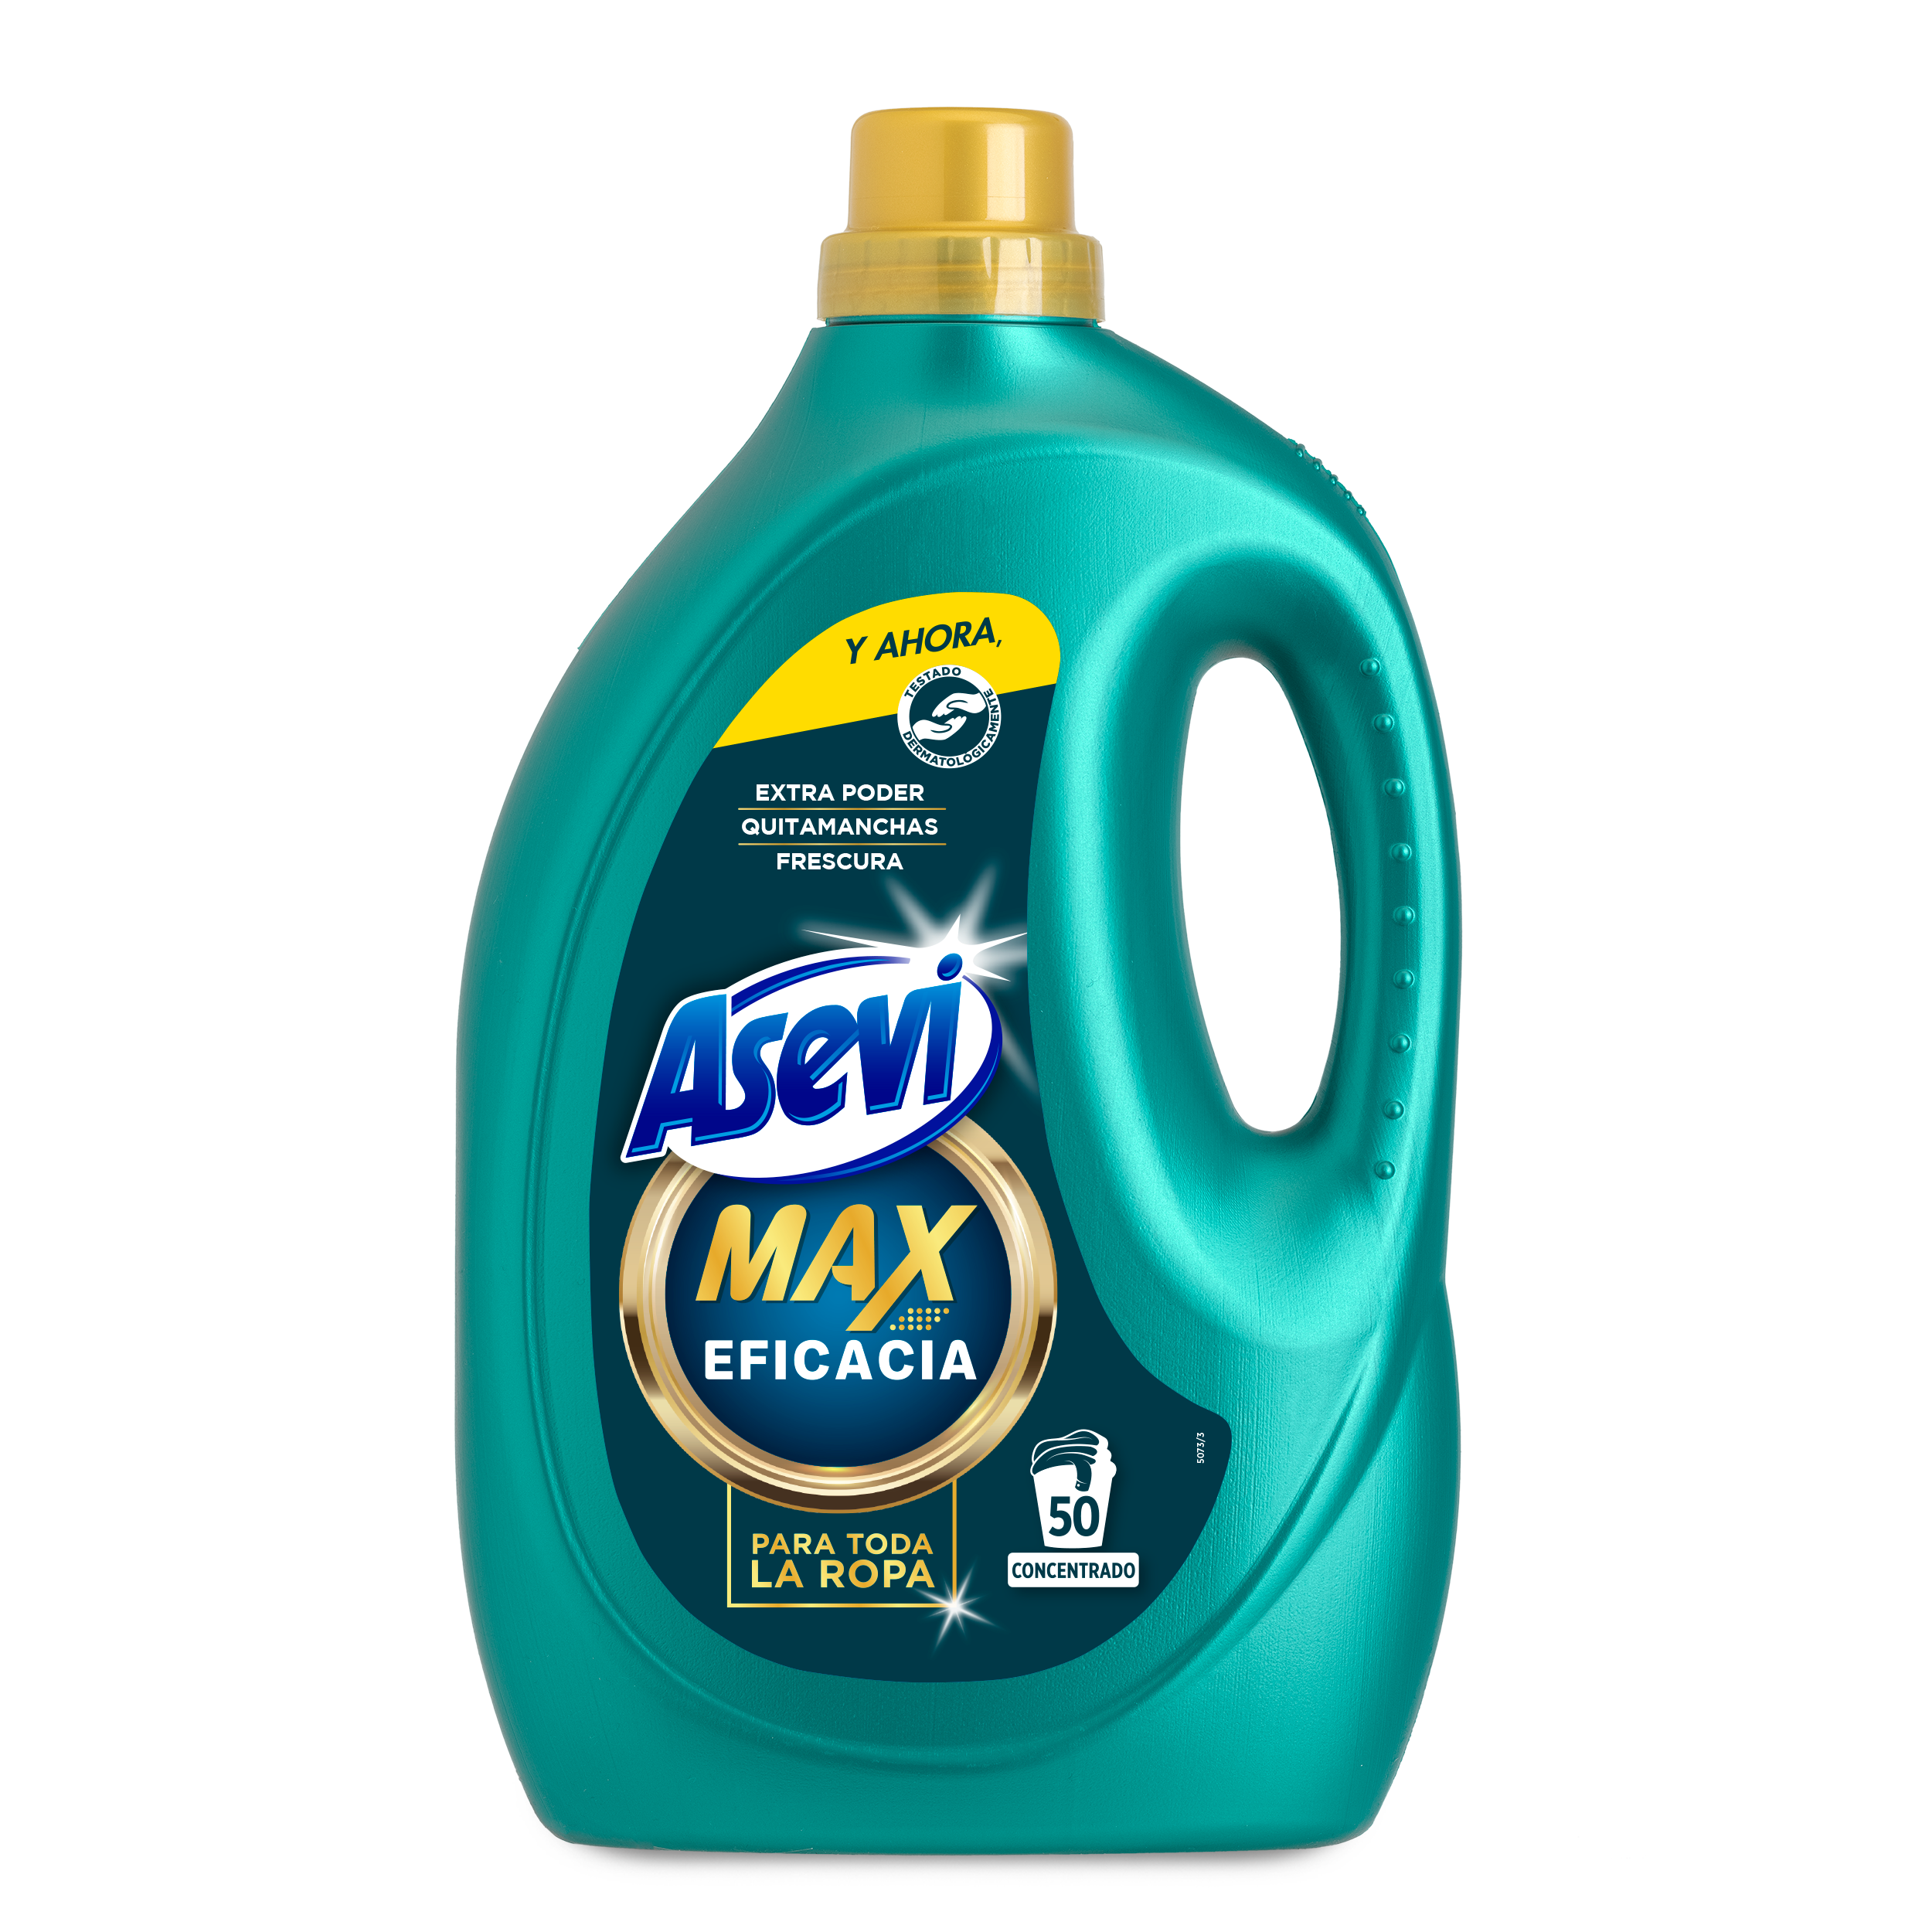 Asevi Detergente Max Eficacia 50d 